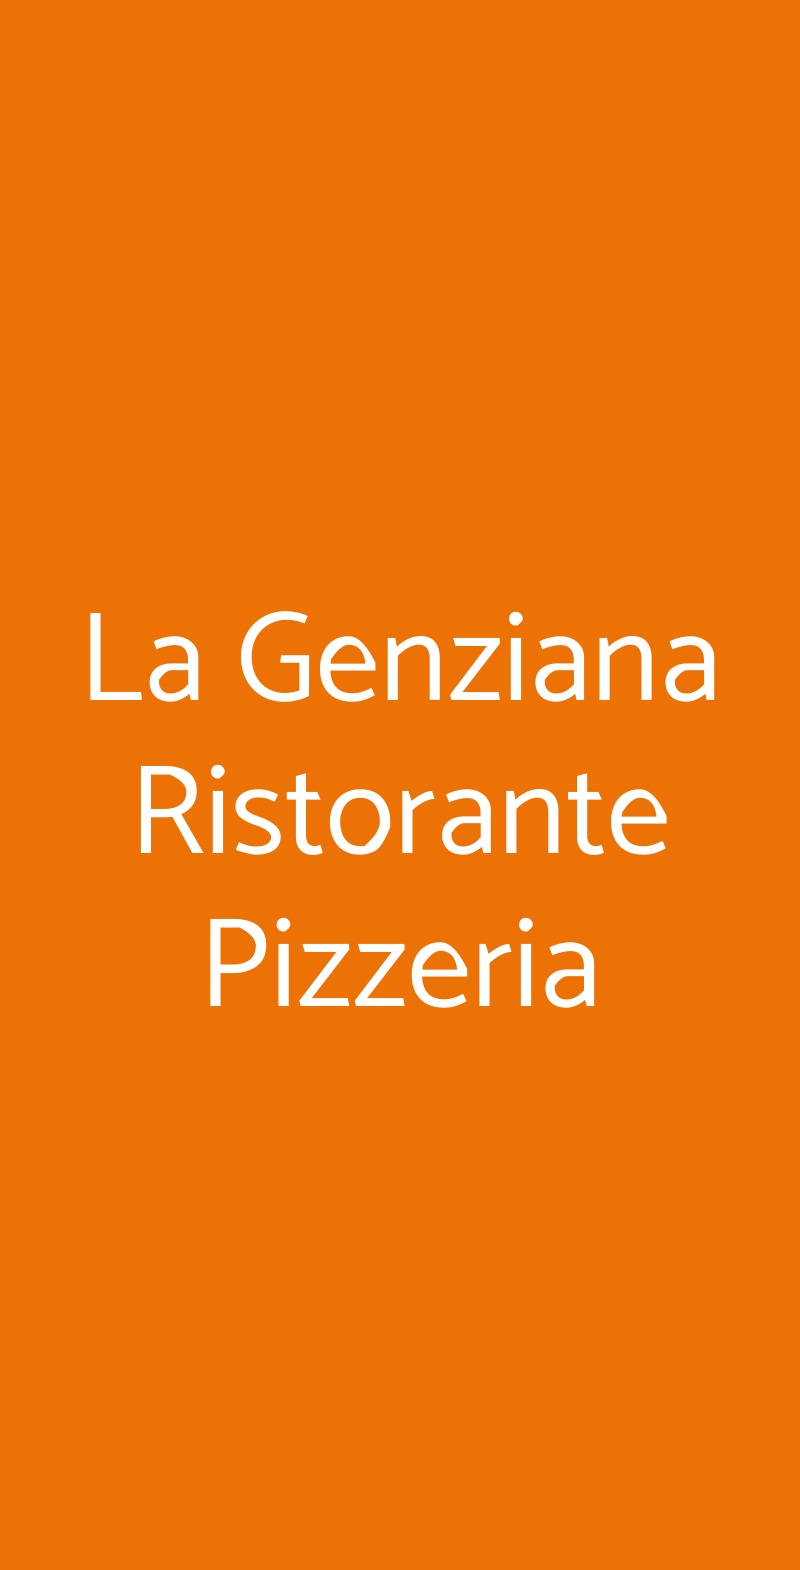 La Genziana Ristorante Pizzeria Roma menù 1 pagina